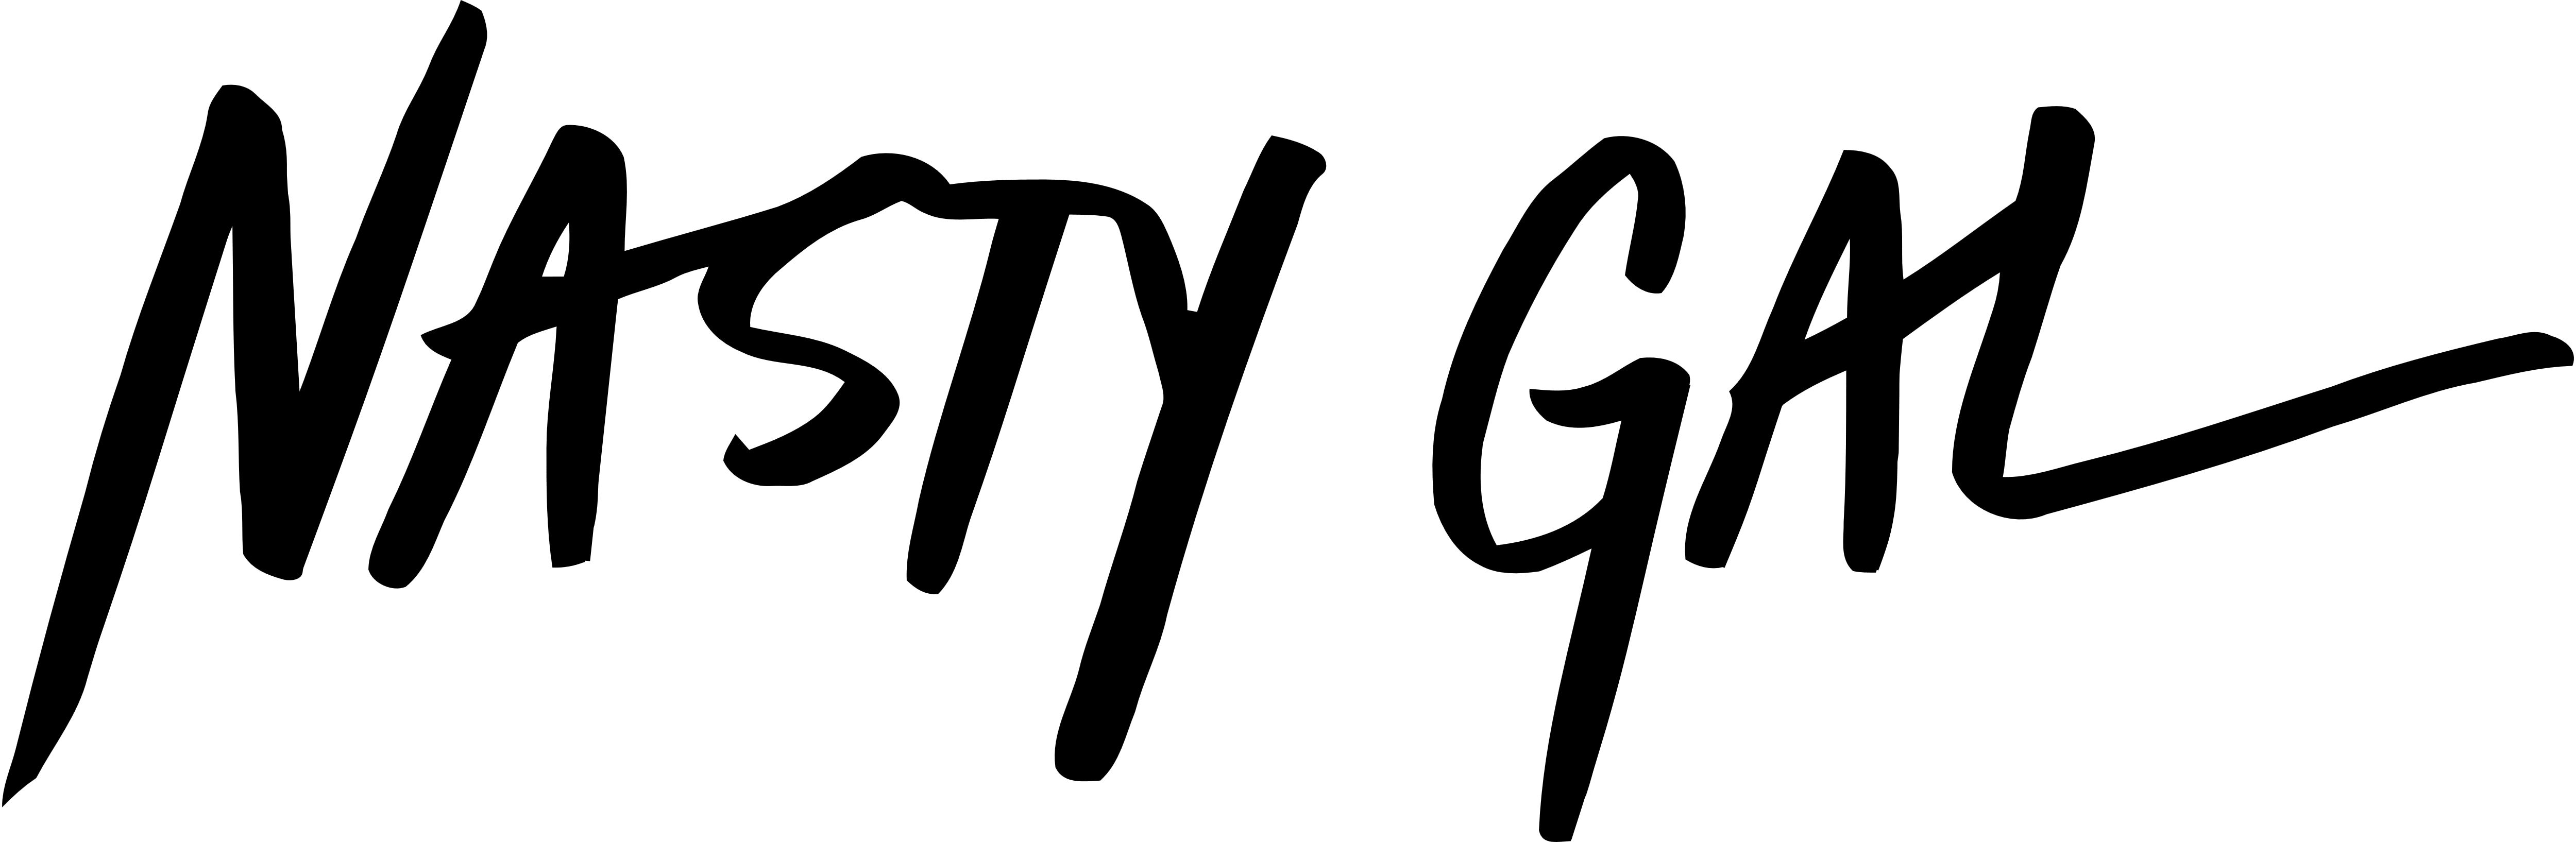 Gal Logo - Nasty Gal – Logos Download